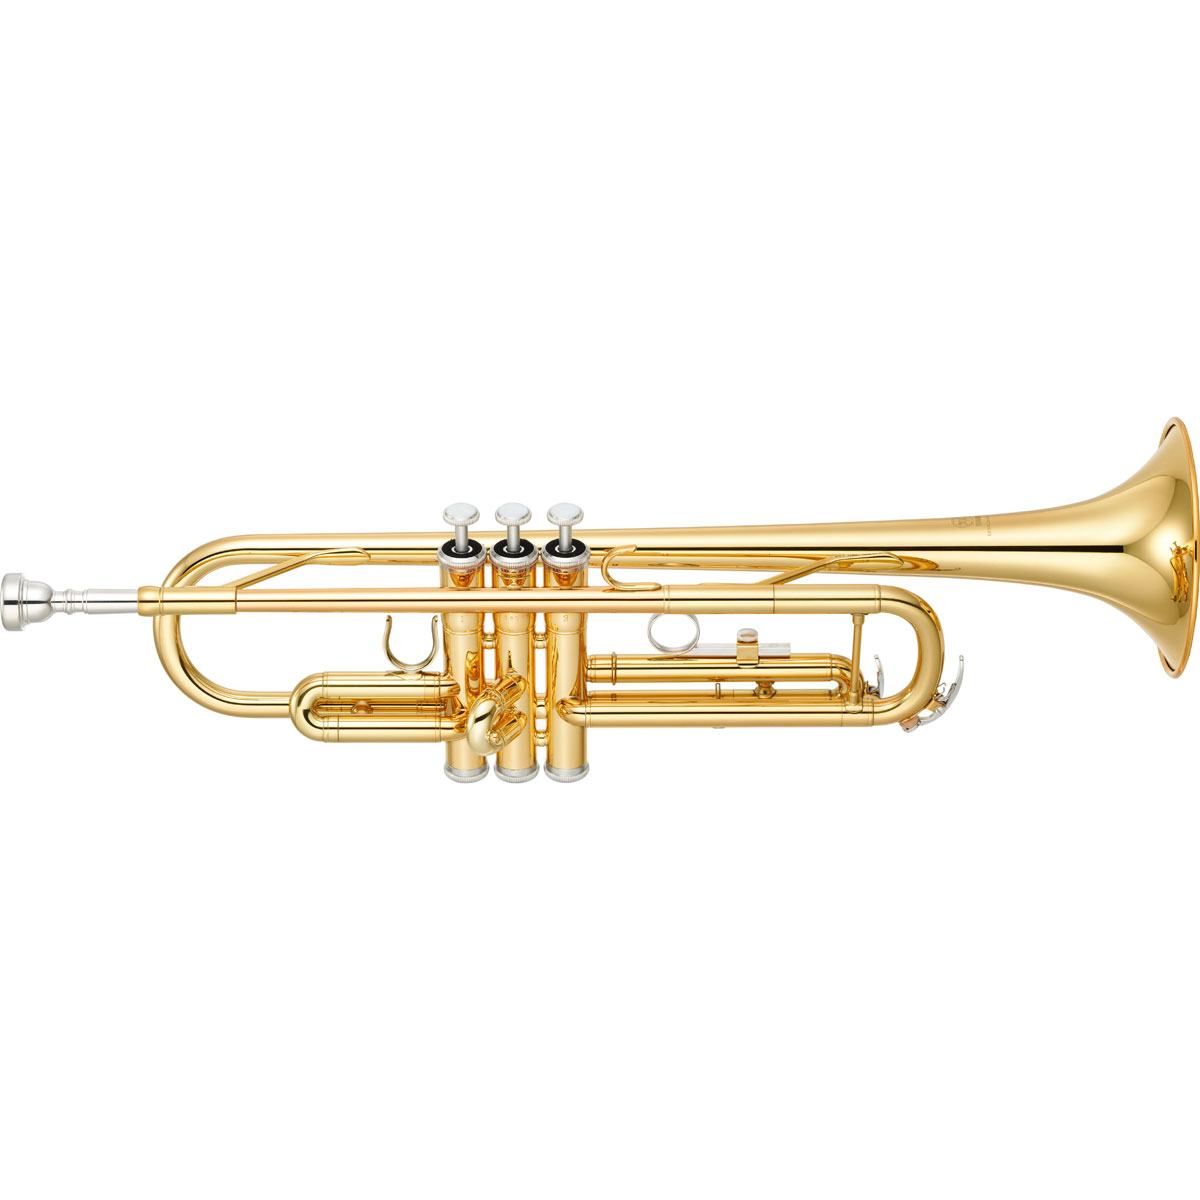 Yamaha YTR-3335 - труба Bb стандартная модель, средняя,  yellow brass, лак - золото